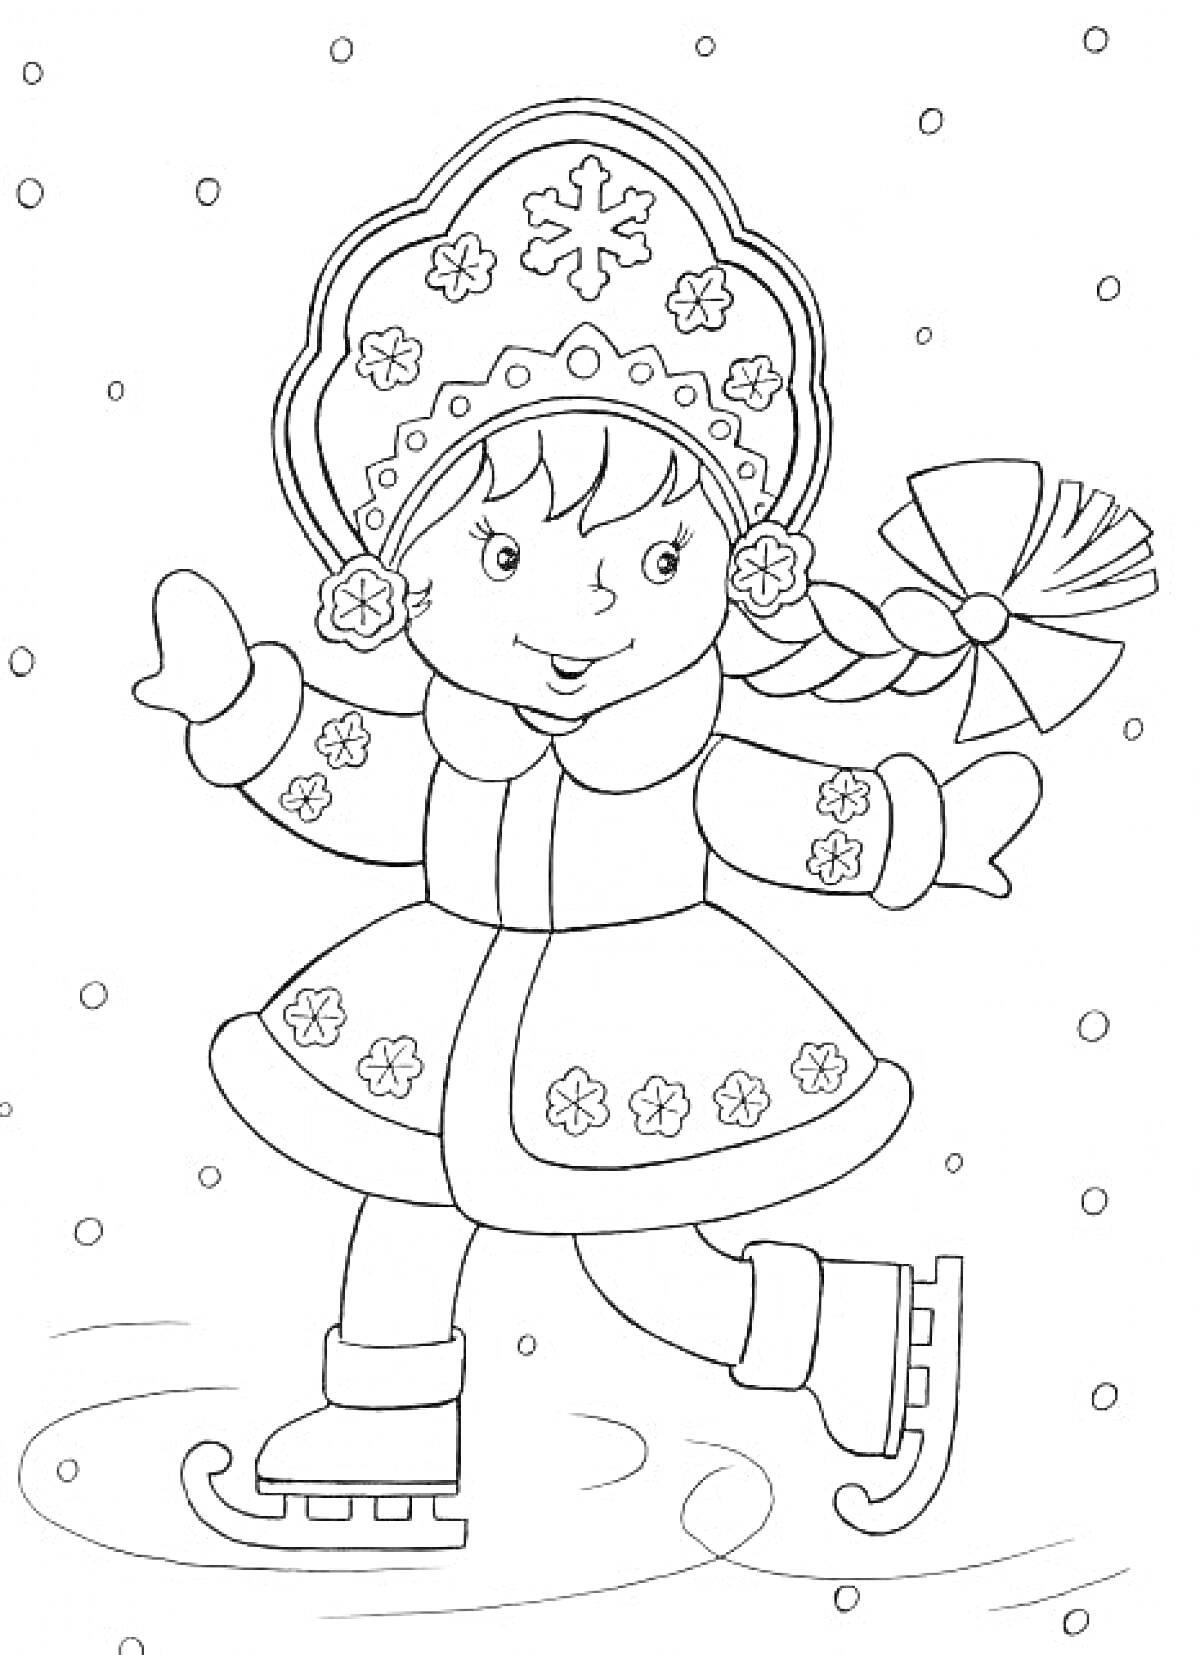 Раскраска Снегурочка на коньках, в кокошнике с узорами, в шубке с узорами, с косой и бантом, на фоне снега